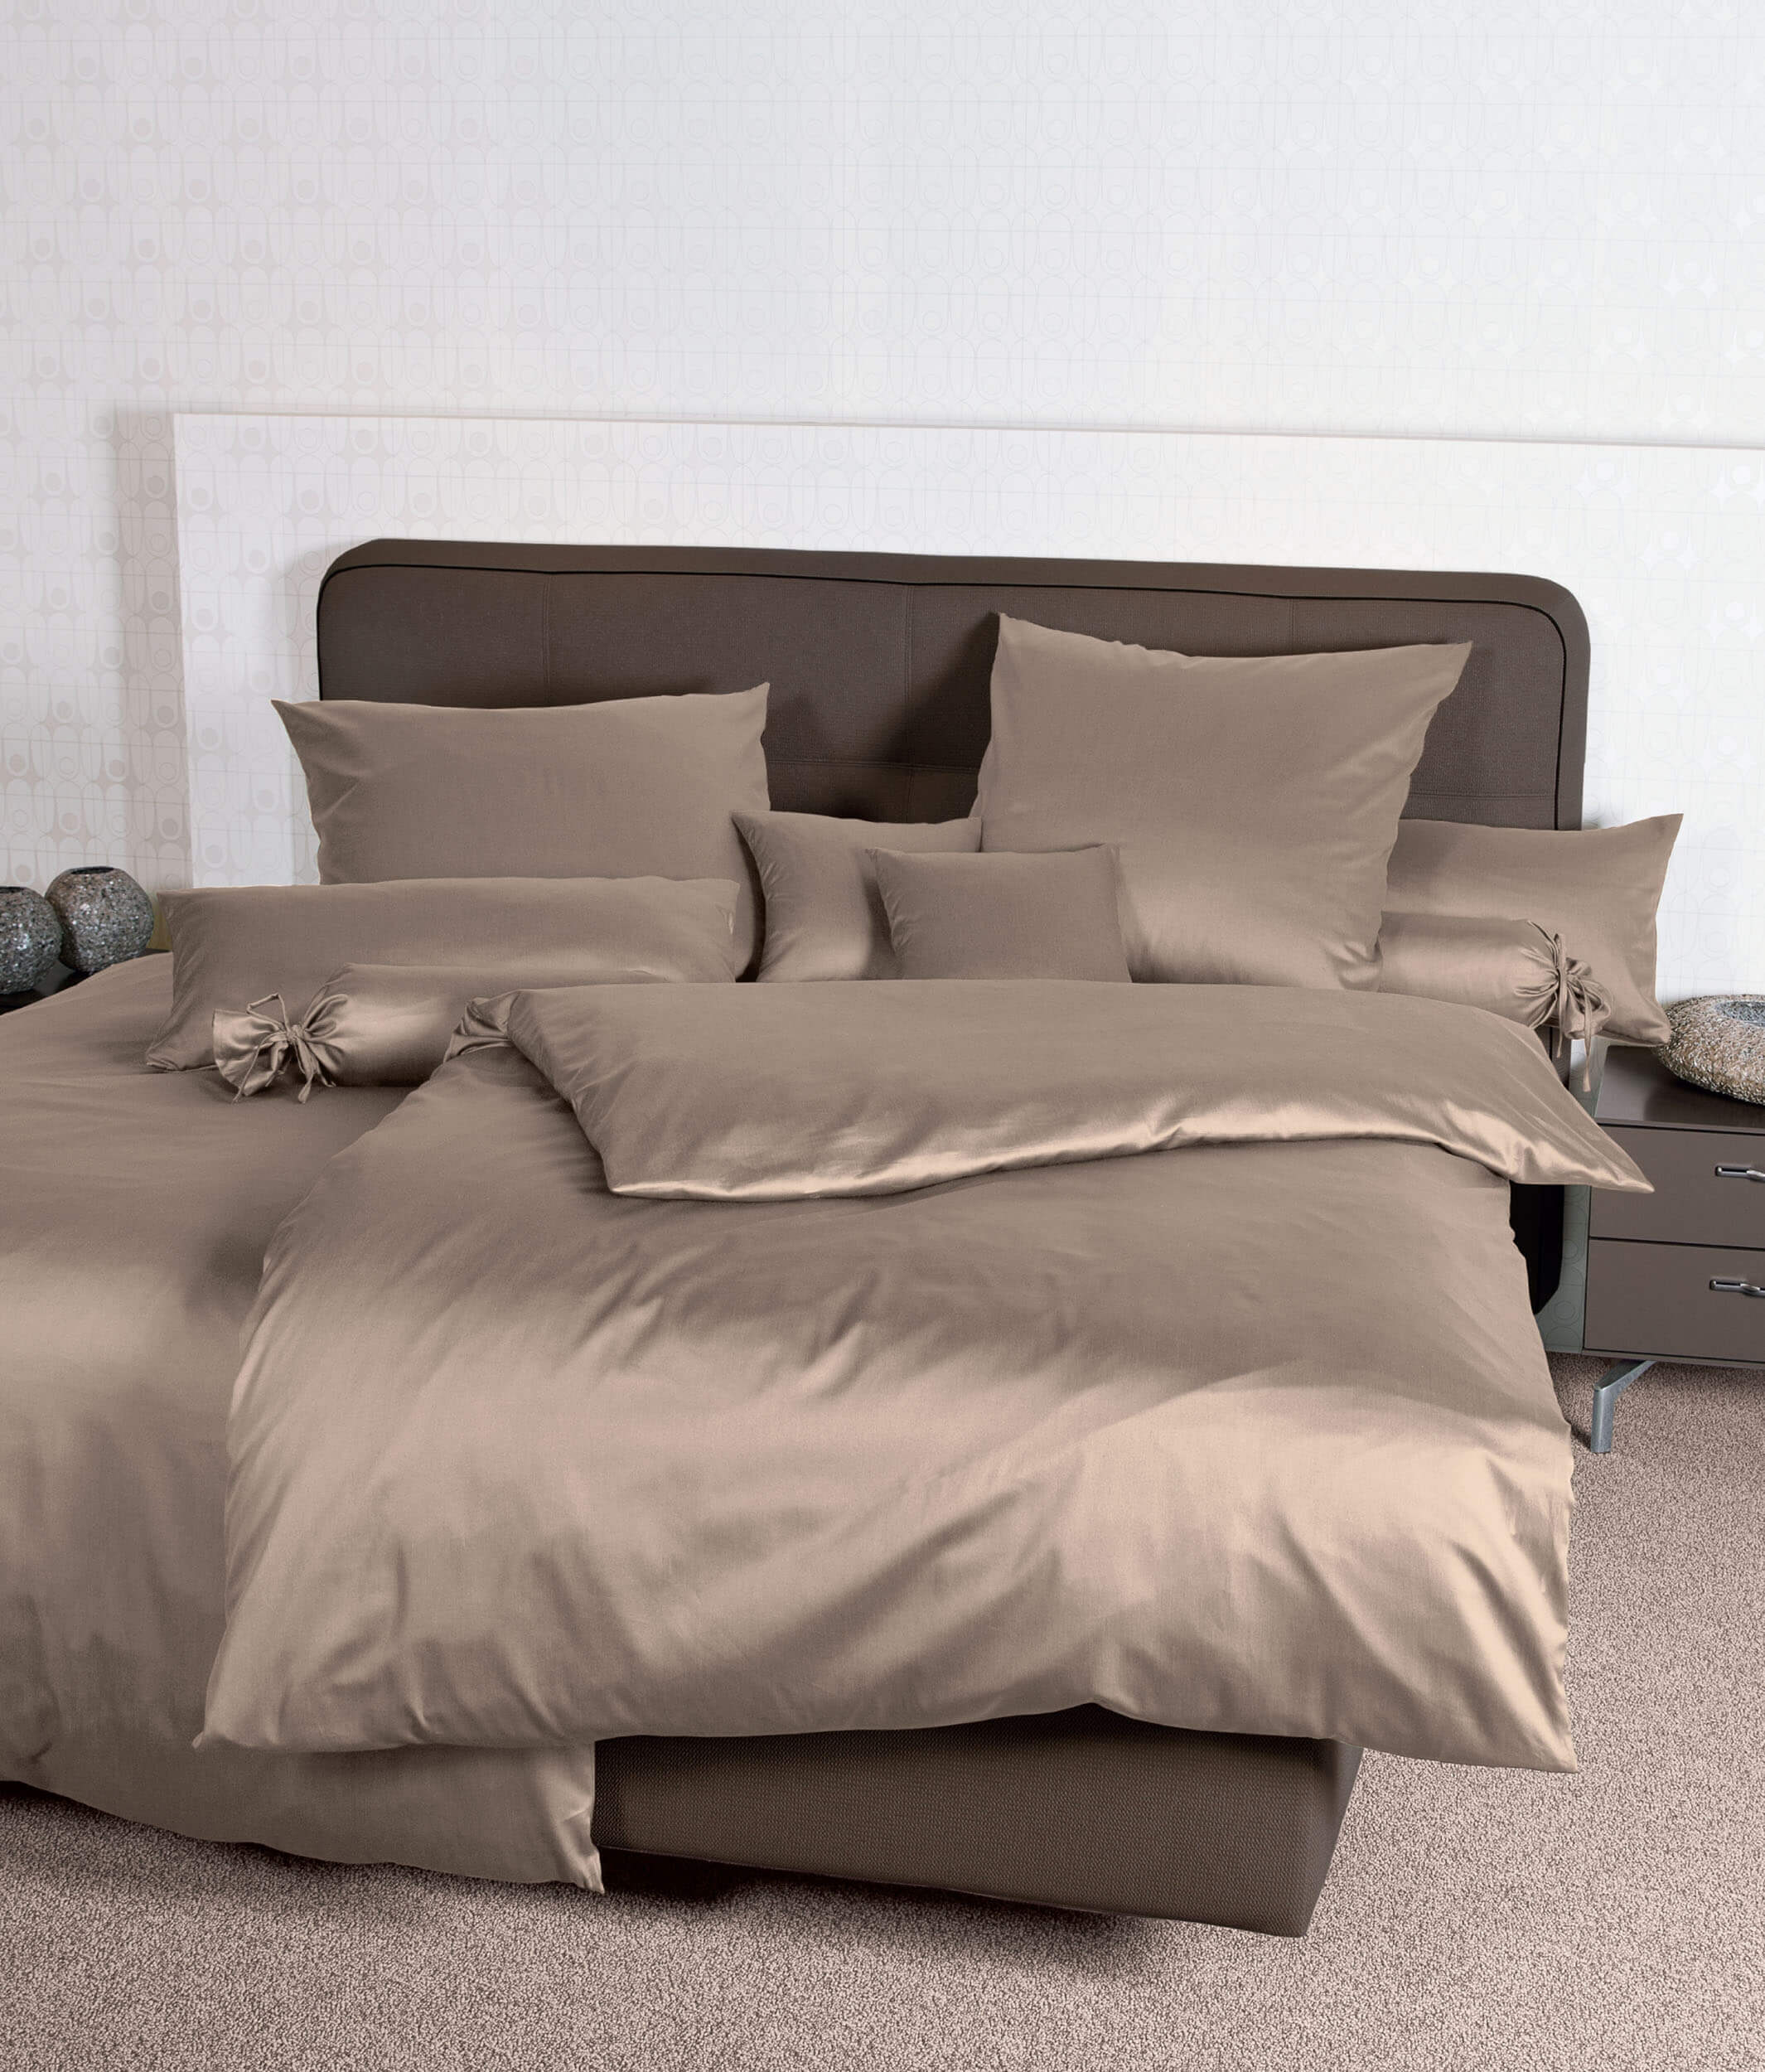 Немецкое постельное белье Colors Taupe ☞ Размер пододеяльника: 200 x 220 см ☞ Размер простыни: Без простыни ☞ Размер наволочек: 50 x 70 см (2 шт.)